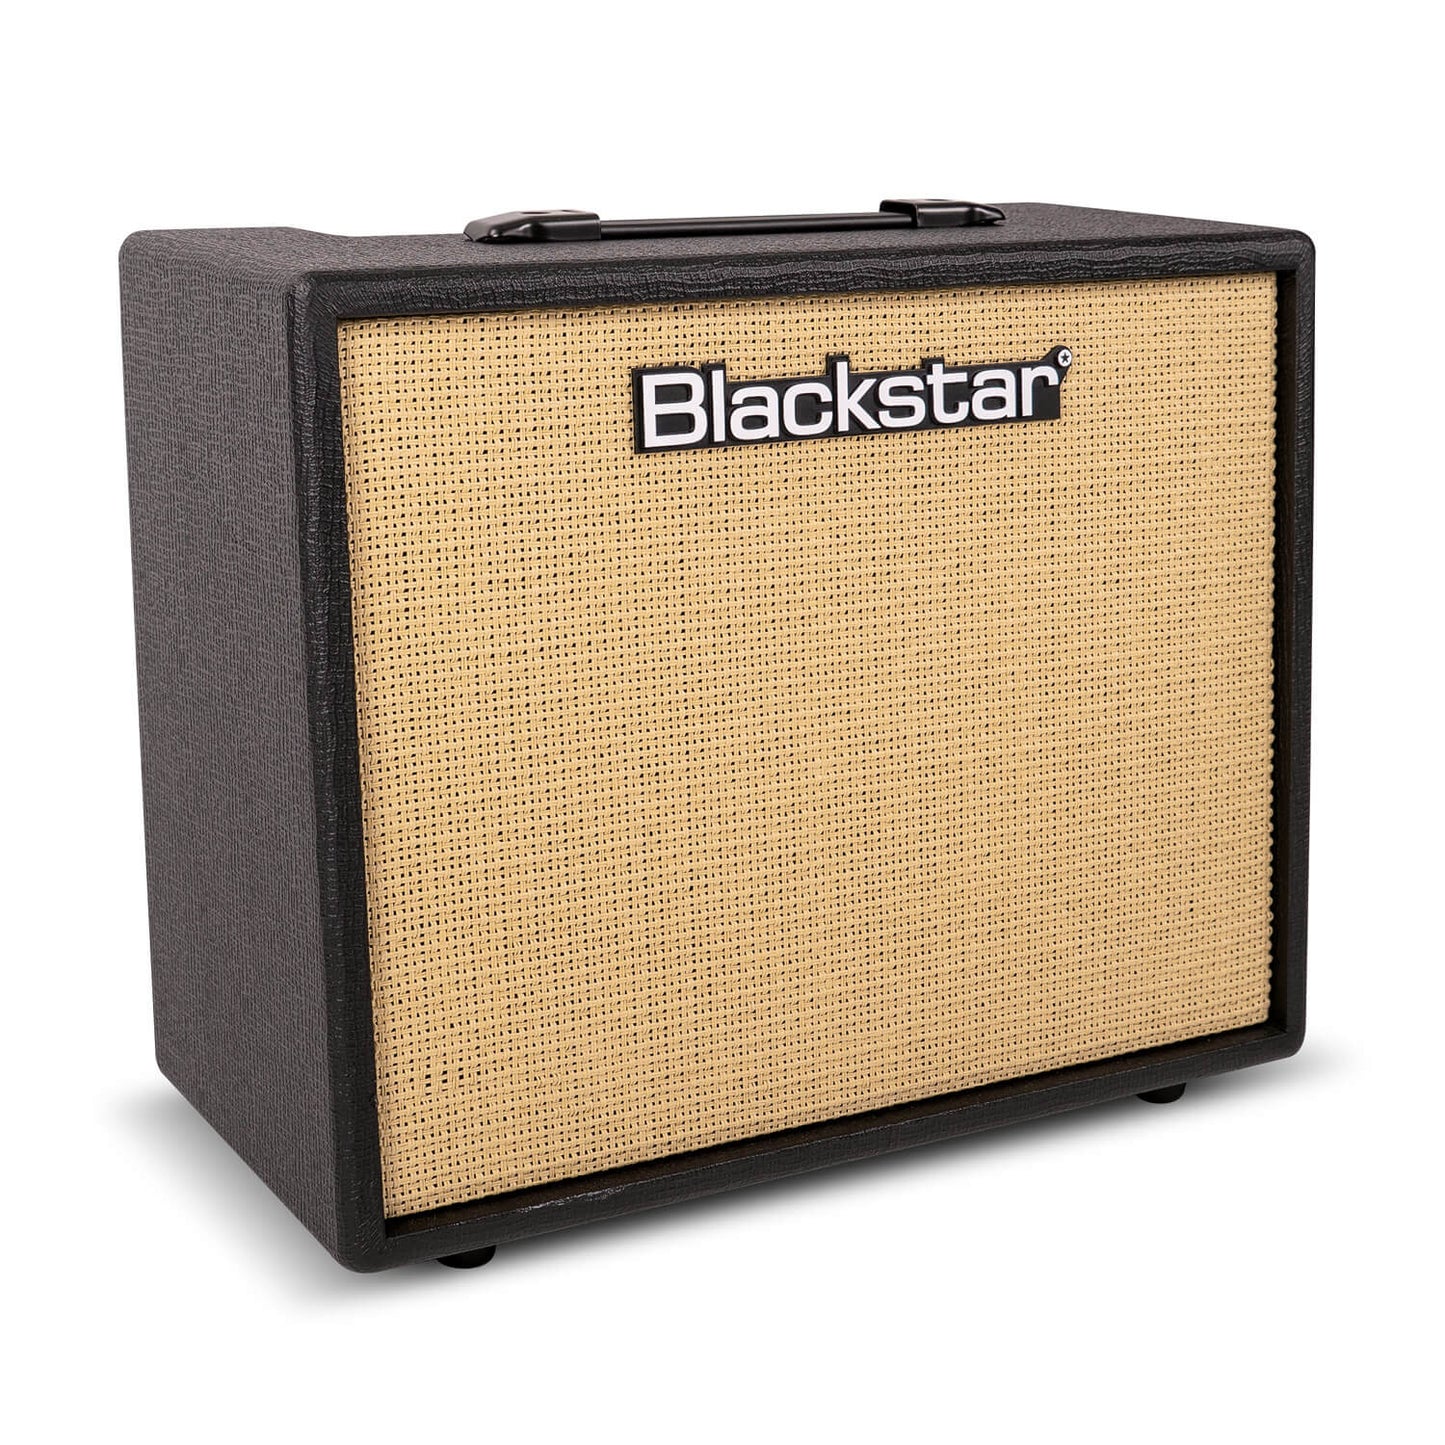 Blackstar Debut 50R 50 Watt Guitar Amplifier Black